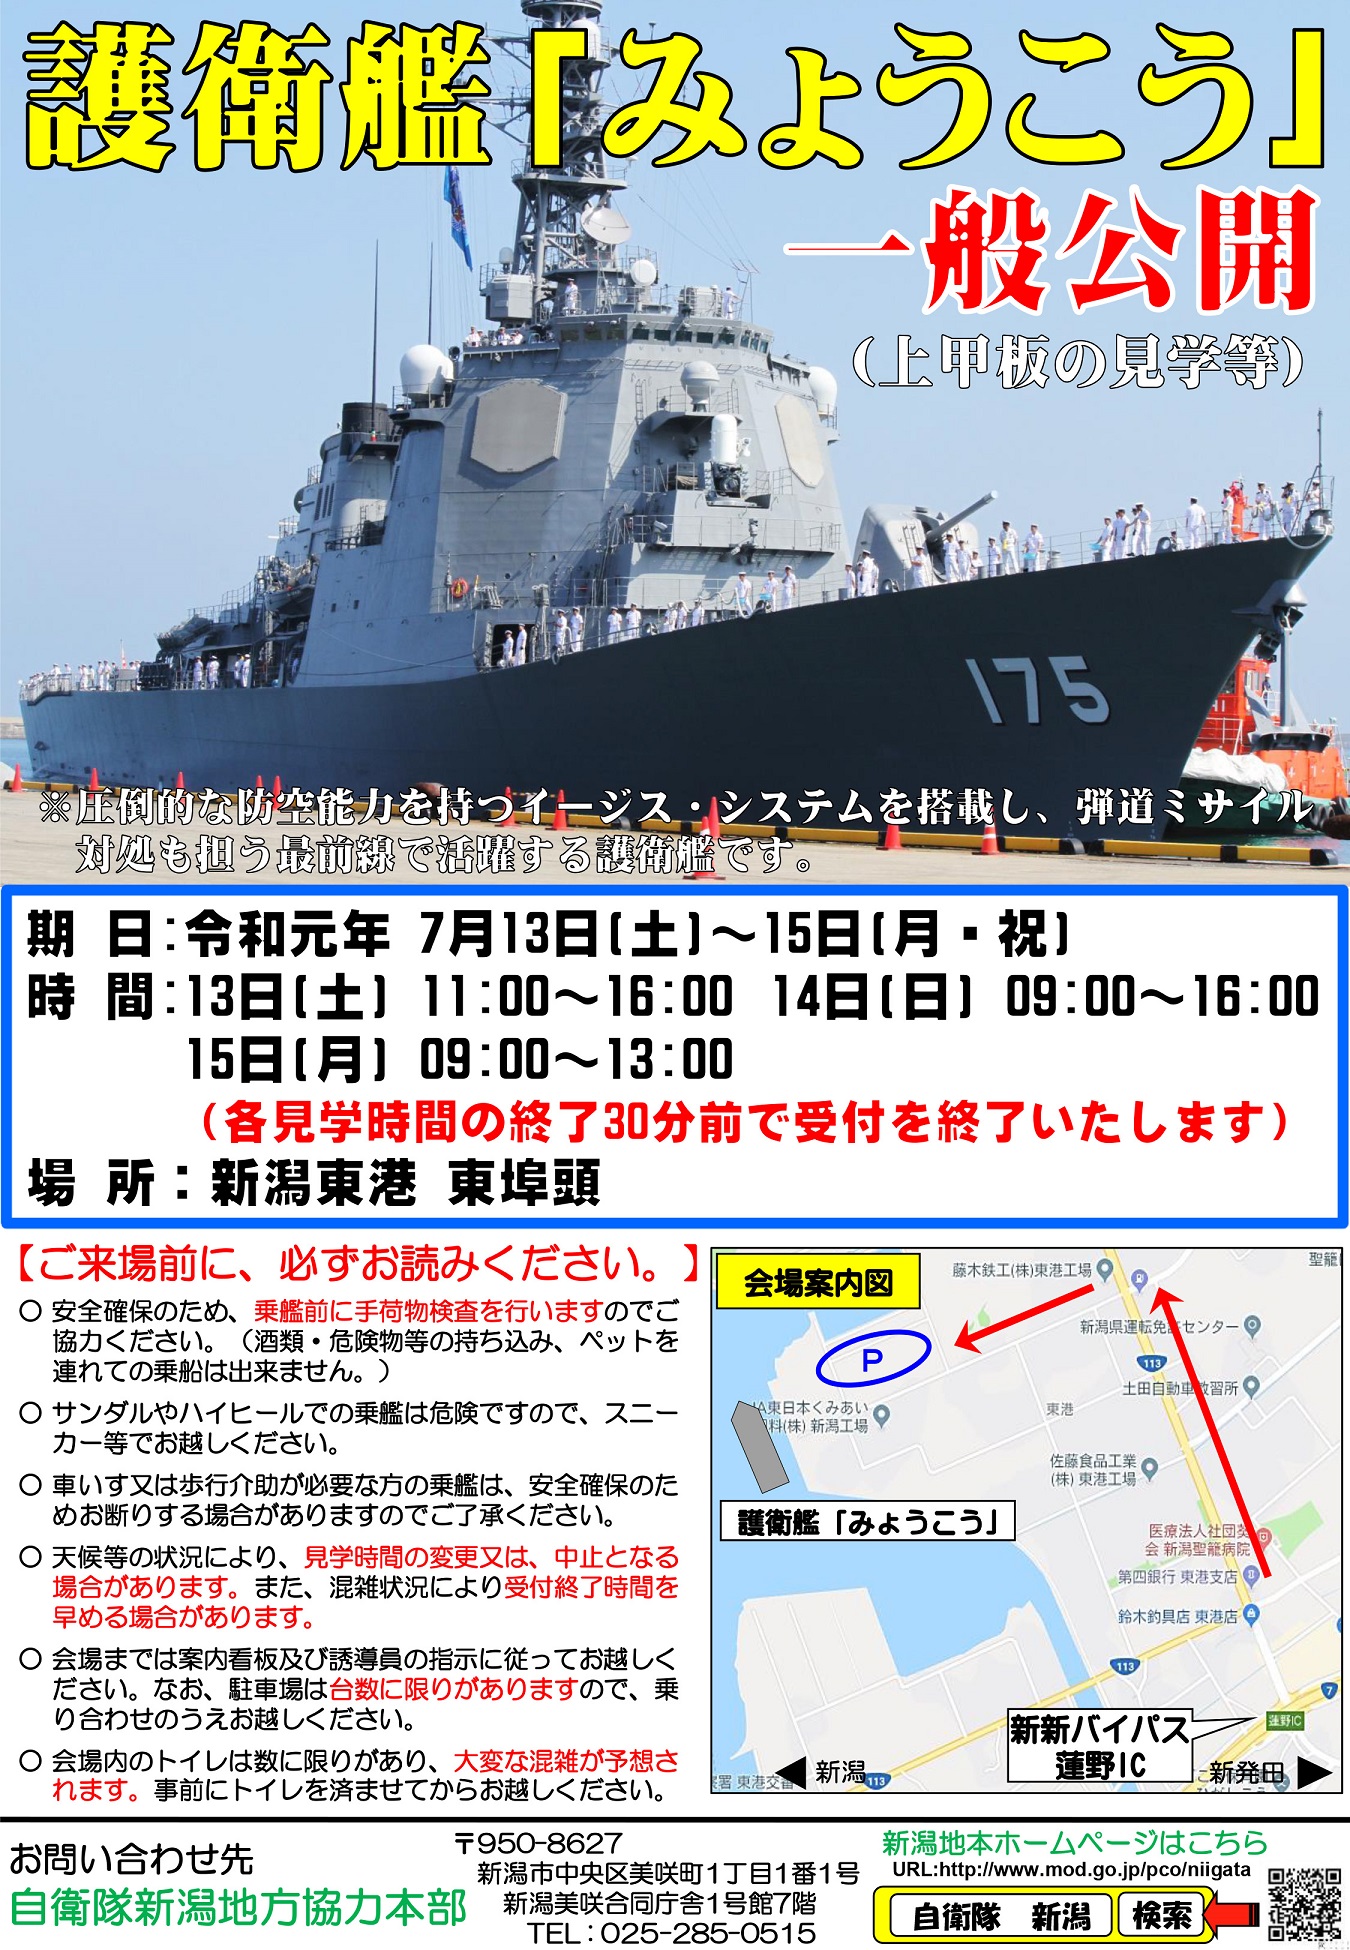 新潟地本 護衛艦「みょうこう」一般公開ポスター